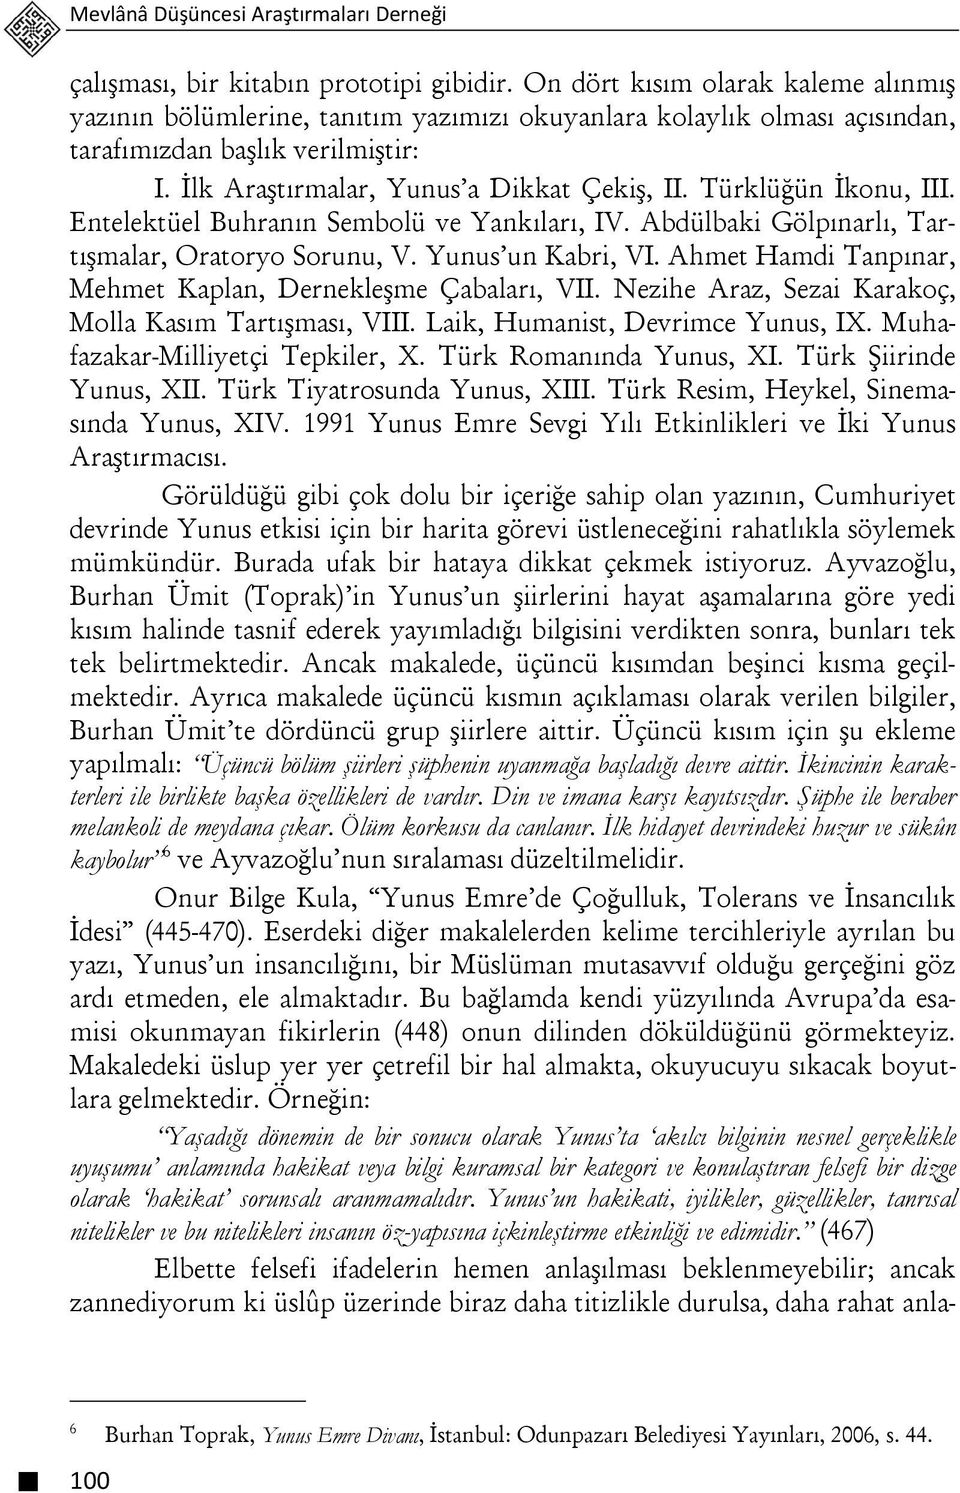 Türklüğün İkonu, III. Entelektüel Buhranın Sembolü ve Yankıları, IV. Abdülbaki Gölpınarlı, Tartışmalar, Oratoryo Sorunu, V. Yunus un Kabri, VI.